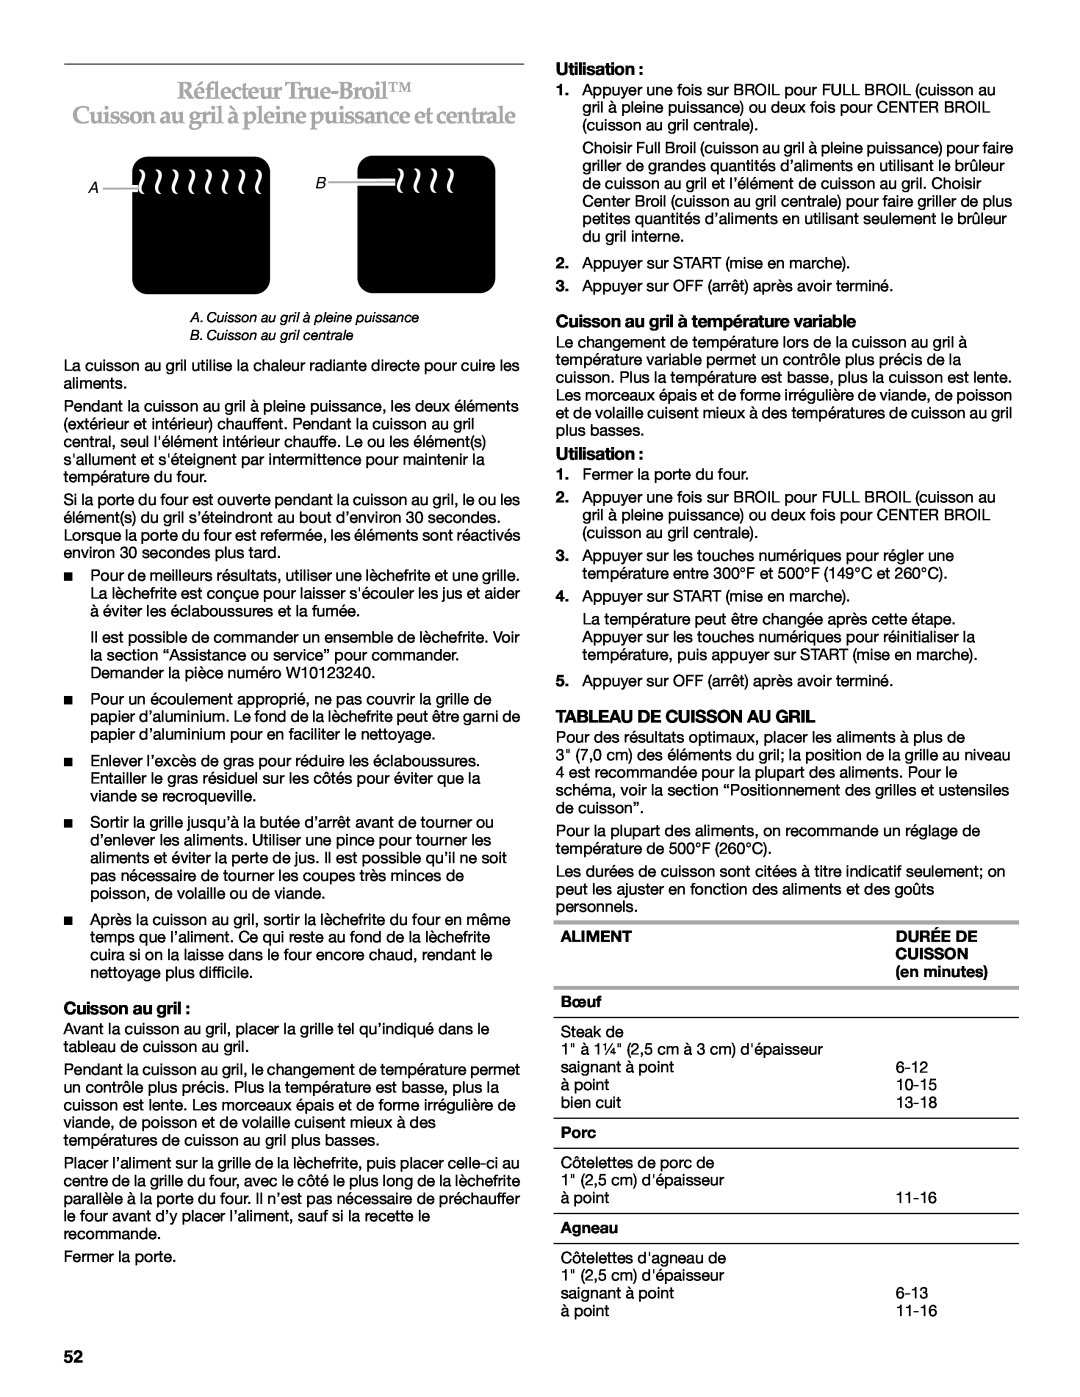 KitchenAid KDRS483, KDRS467 manual Réflecteur True-Broil, Cuisson au gril à pleine puissance et centrale, Utilisation, A B 